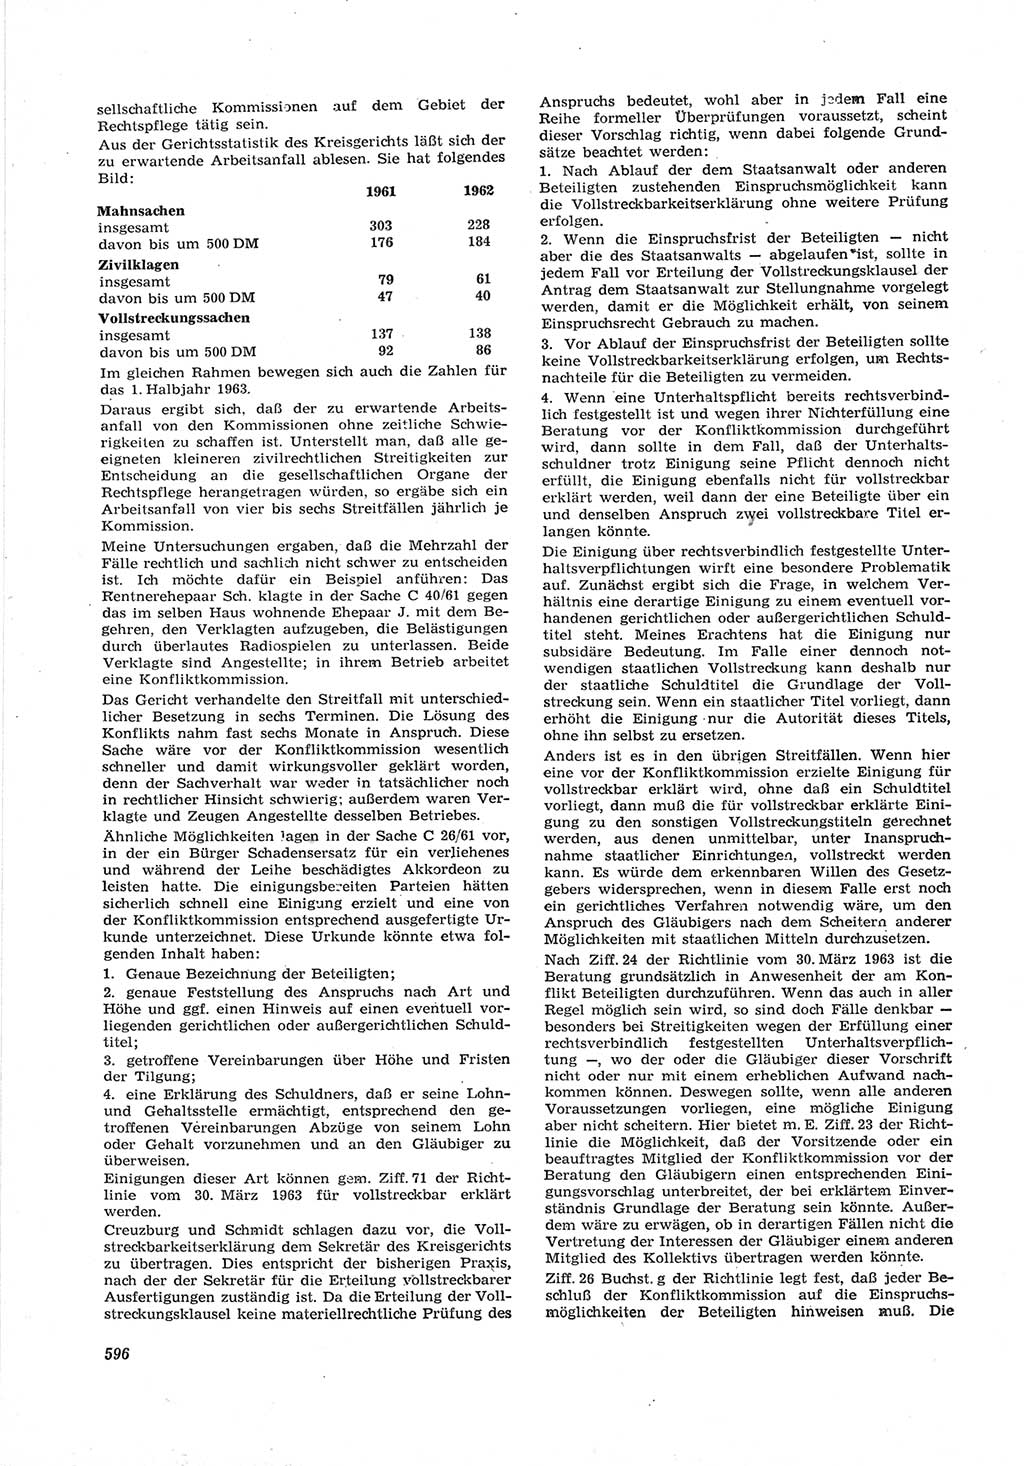 Neue Justiz (NJ), Zeitschrift für Recht und Rechtswissenschaft [Deutsche Demokratische Republik (DDR)], 17. Jahrgang 1963, Seite 596 (NJ DDR 1963, S. 596)